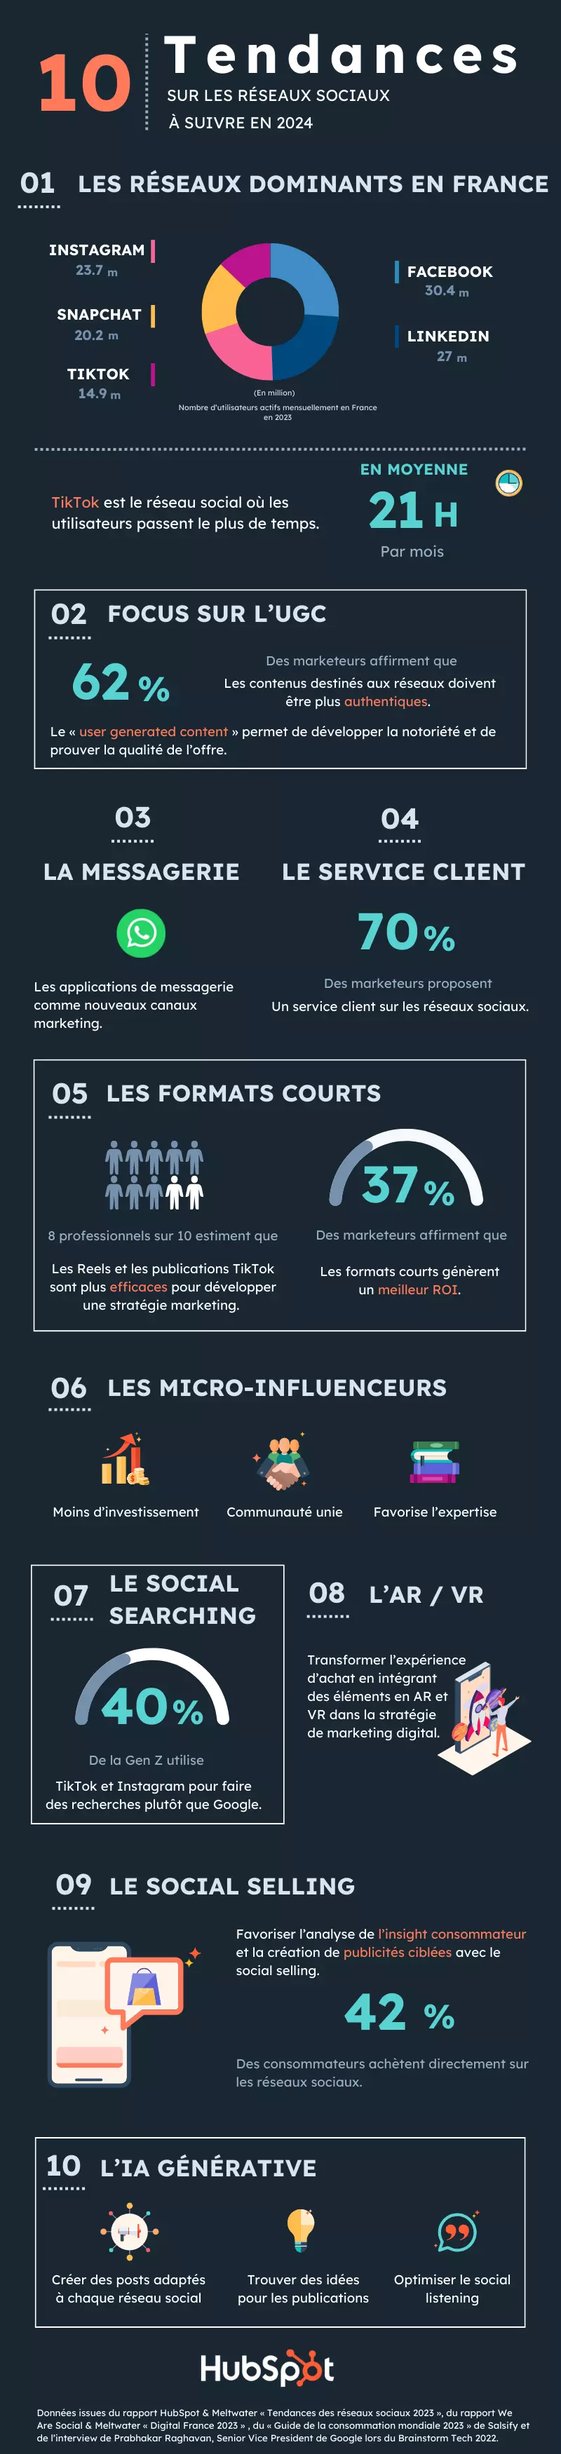 Infographie concernant les tendances sur les réseaux sociaux en France et dans le monde